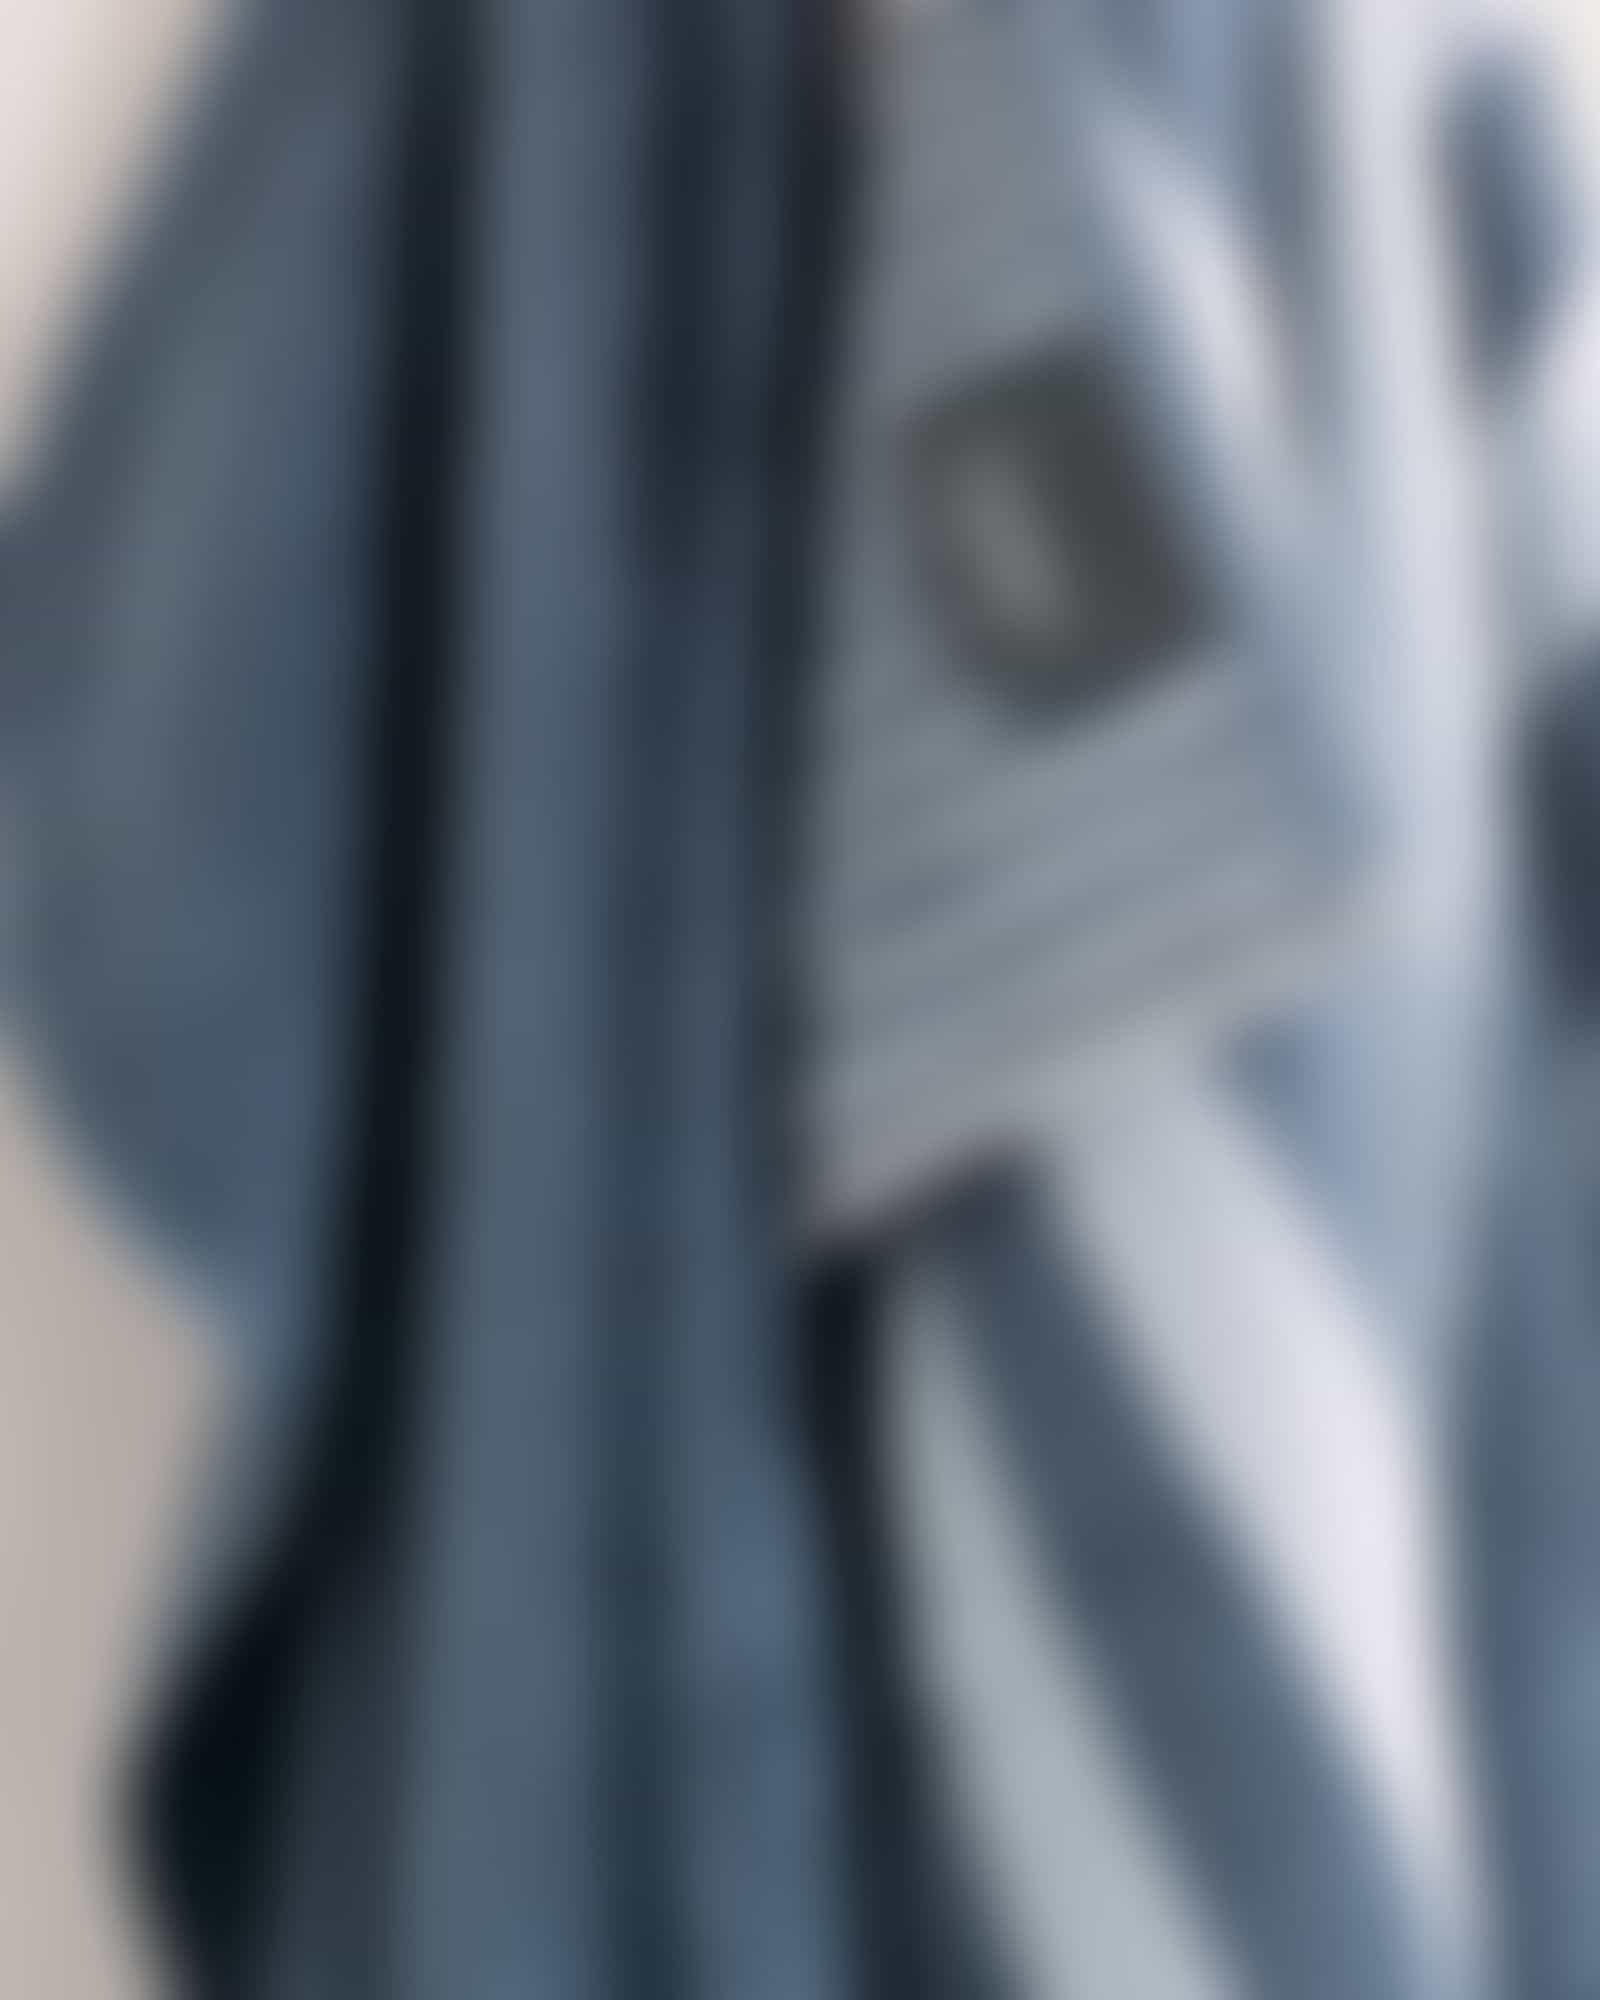 Cawö Handtücher Reverse Wendestreifen 6200 - Farbe: nachtblau - 11 - Duschtuch 70x140 cm